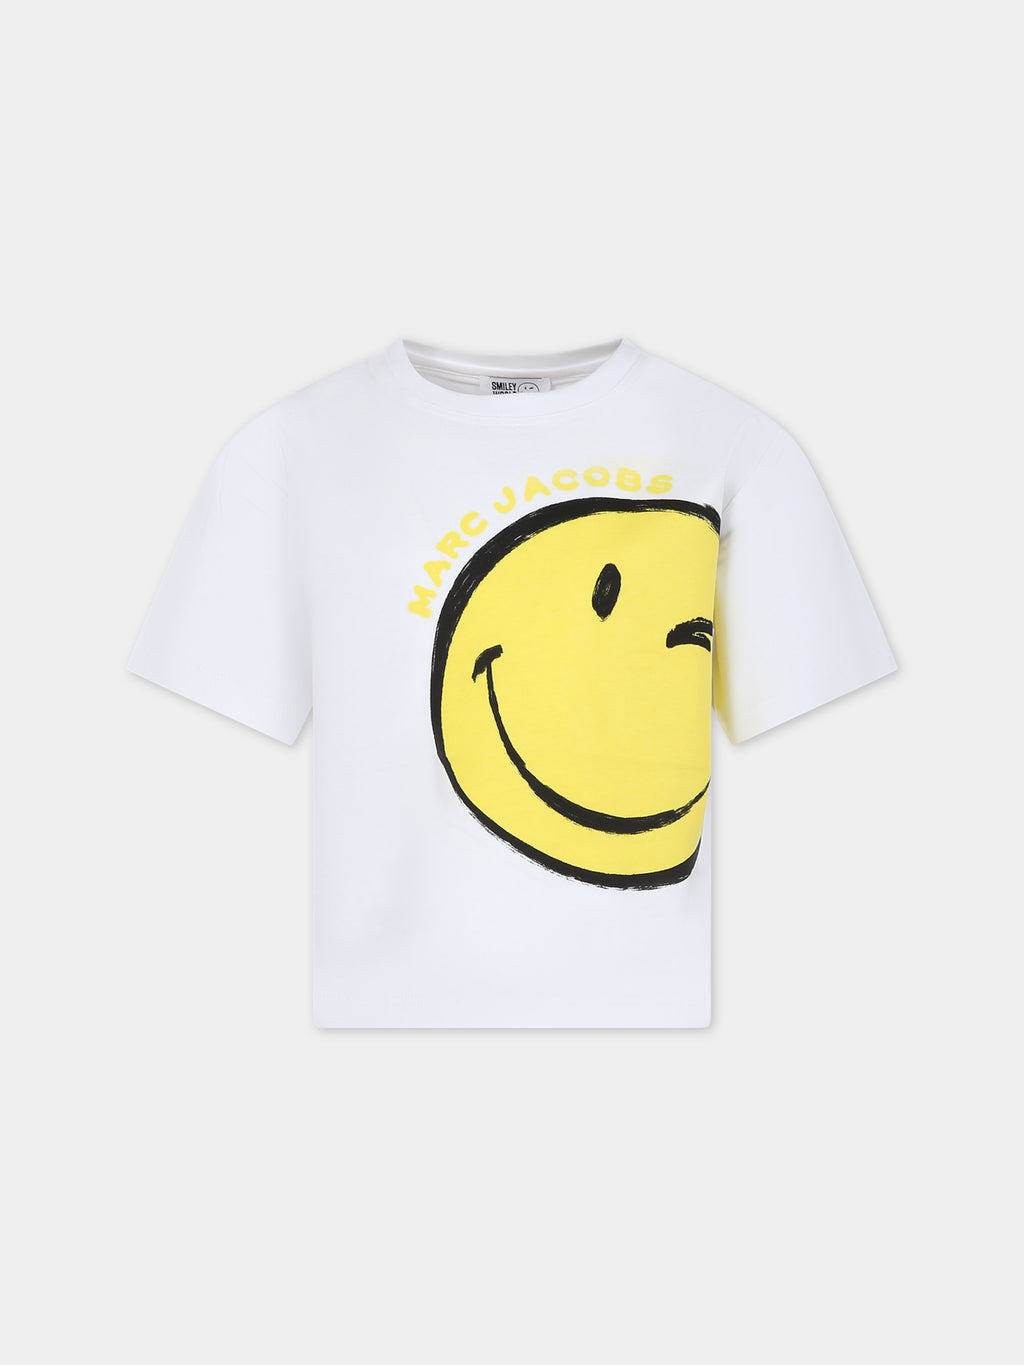 T-shirt blanc pour garçon avec smiley et logo